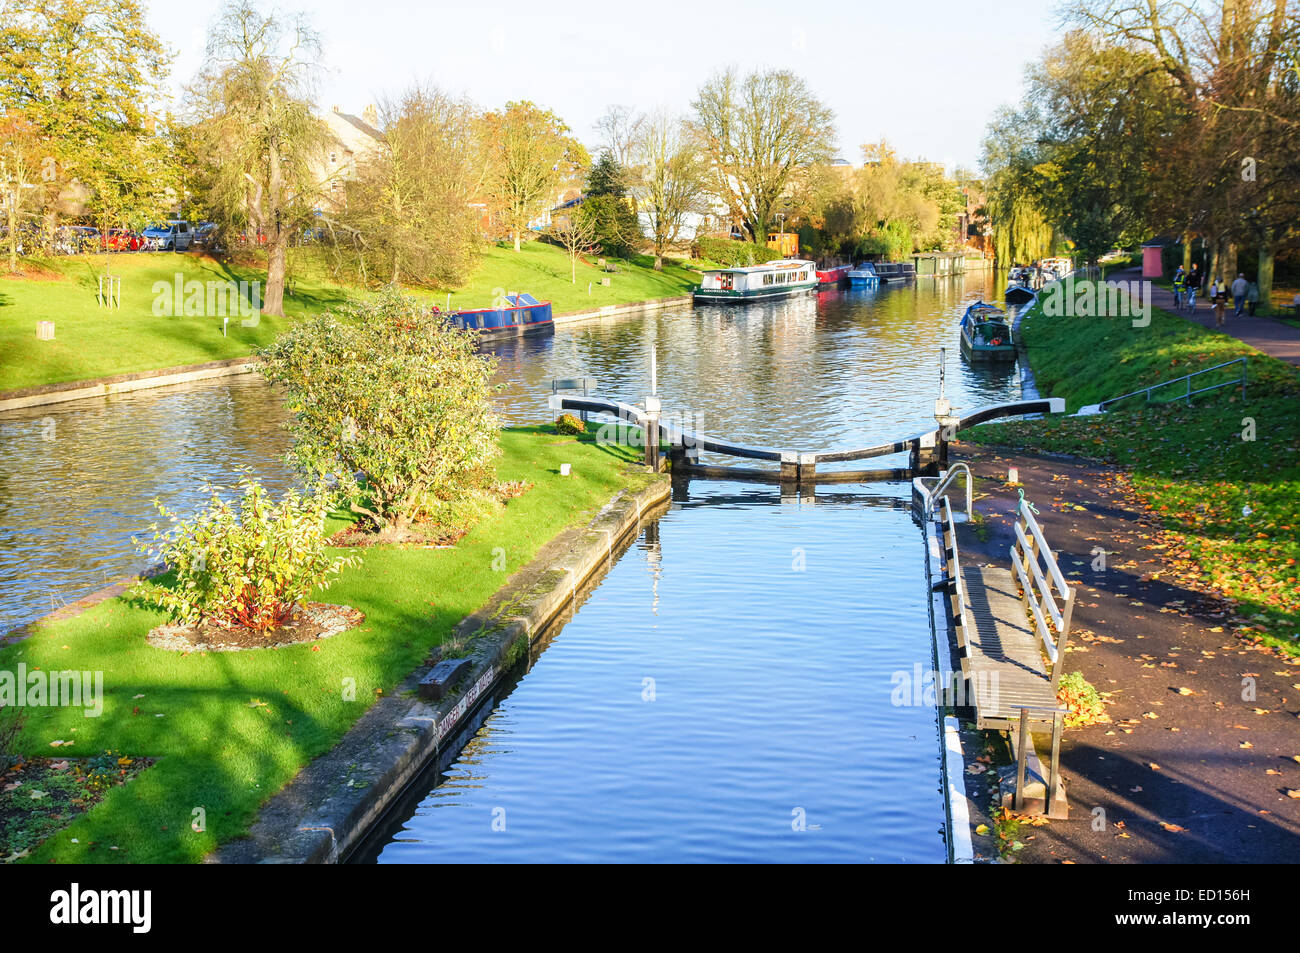 Péniche sur la rivière Cam en automne, Cambridge Cambridgeshire Angleterre Royaume-Uni UK Banque D'Images